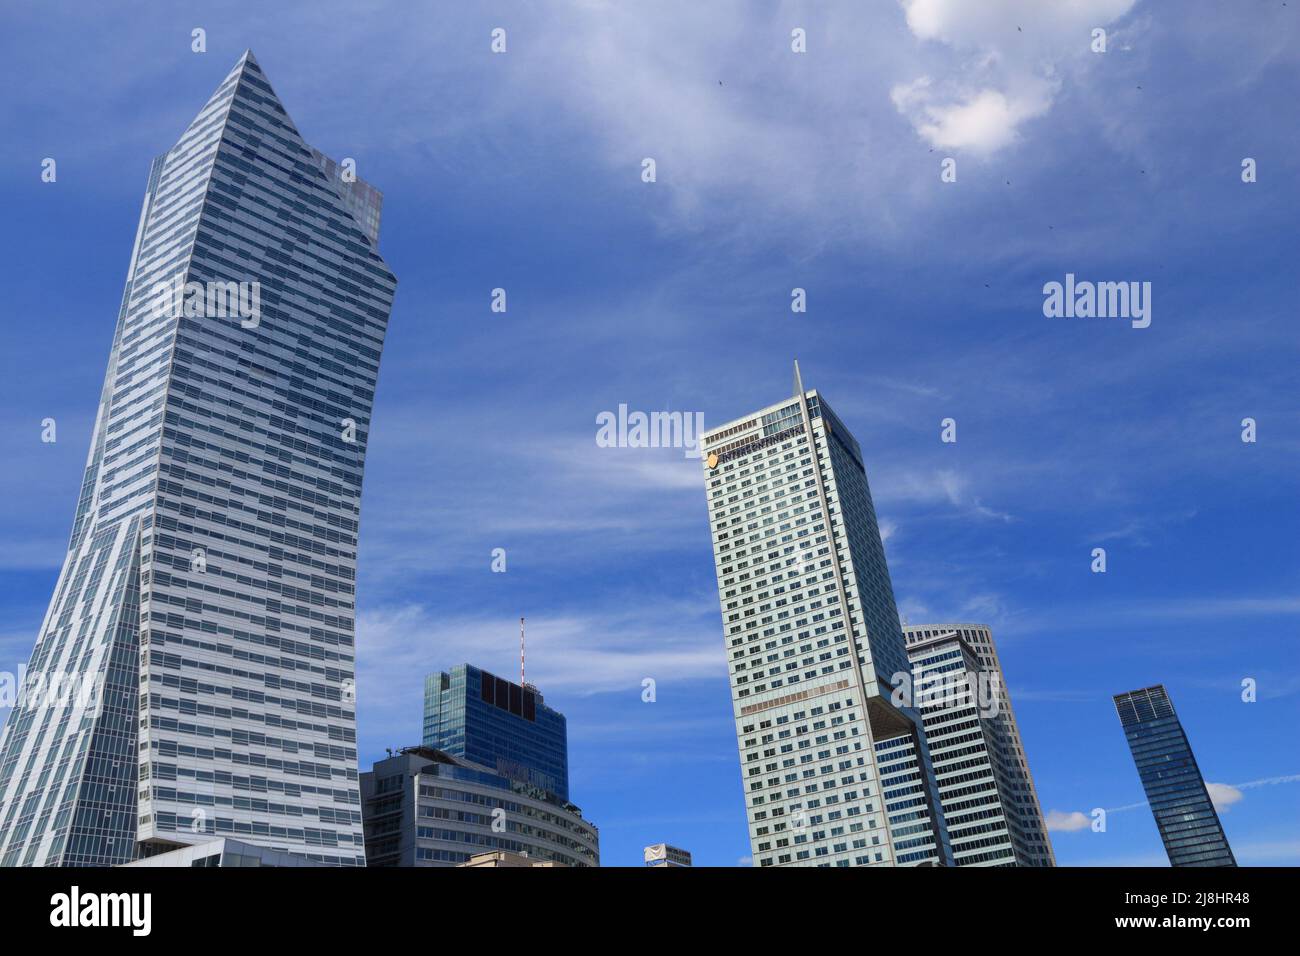 WARSCHAU, POLEN - 19. JUNI 2016: Skyline von Warschau mit dem Wolkenkratzer Zlota 44 (links) in Polen. Der 192m hohe Wolkenkratzer wurde von Daniel Libeskind entworfen. Stockfoto